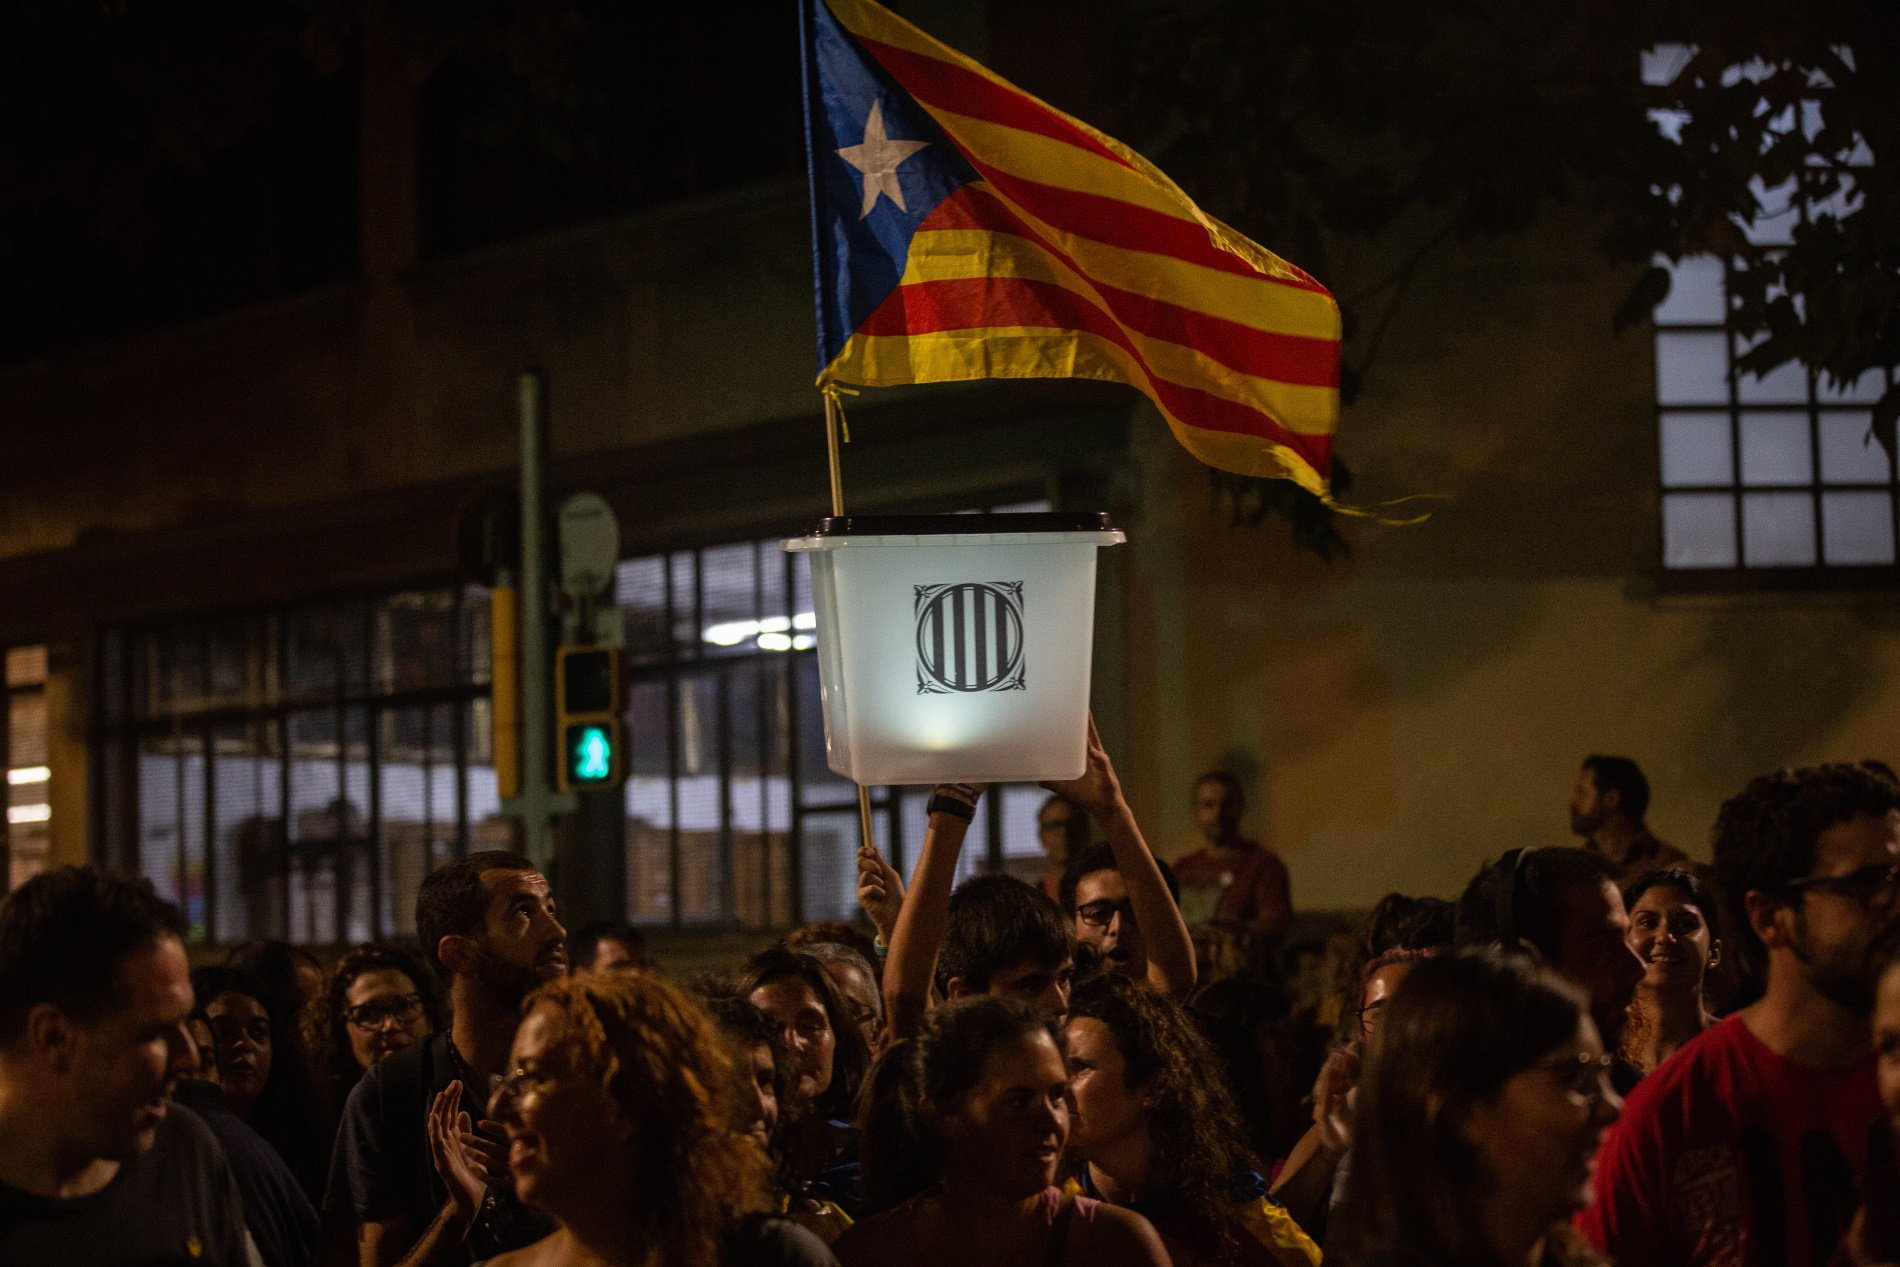 El pla de l’exèrcit espanyol per frenar la independència després de l’1 d'octubre